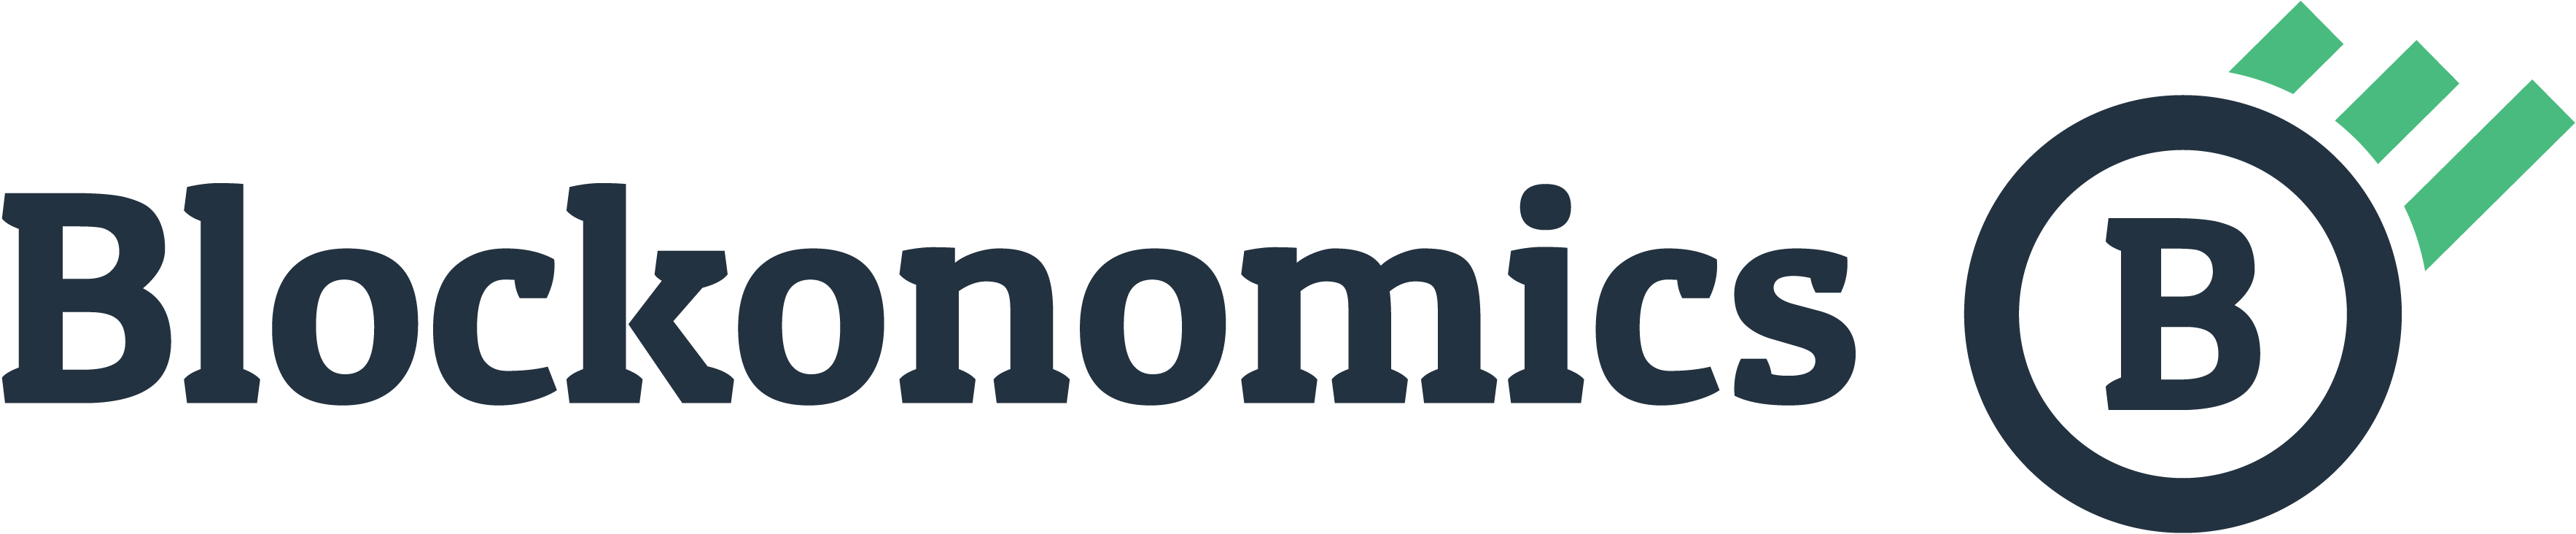 Blockonomics logo.png